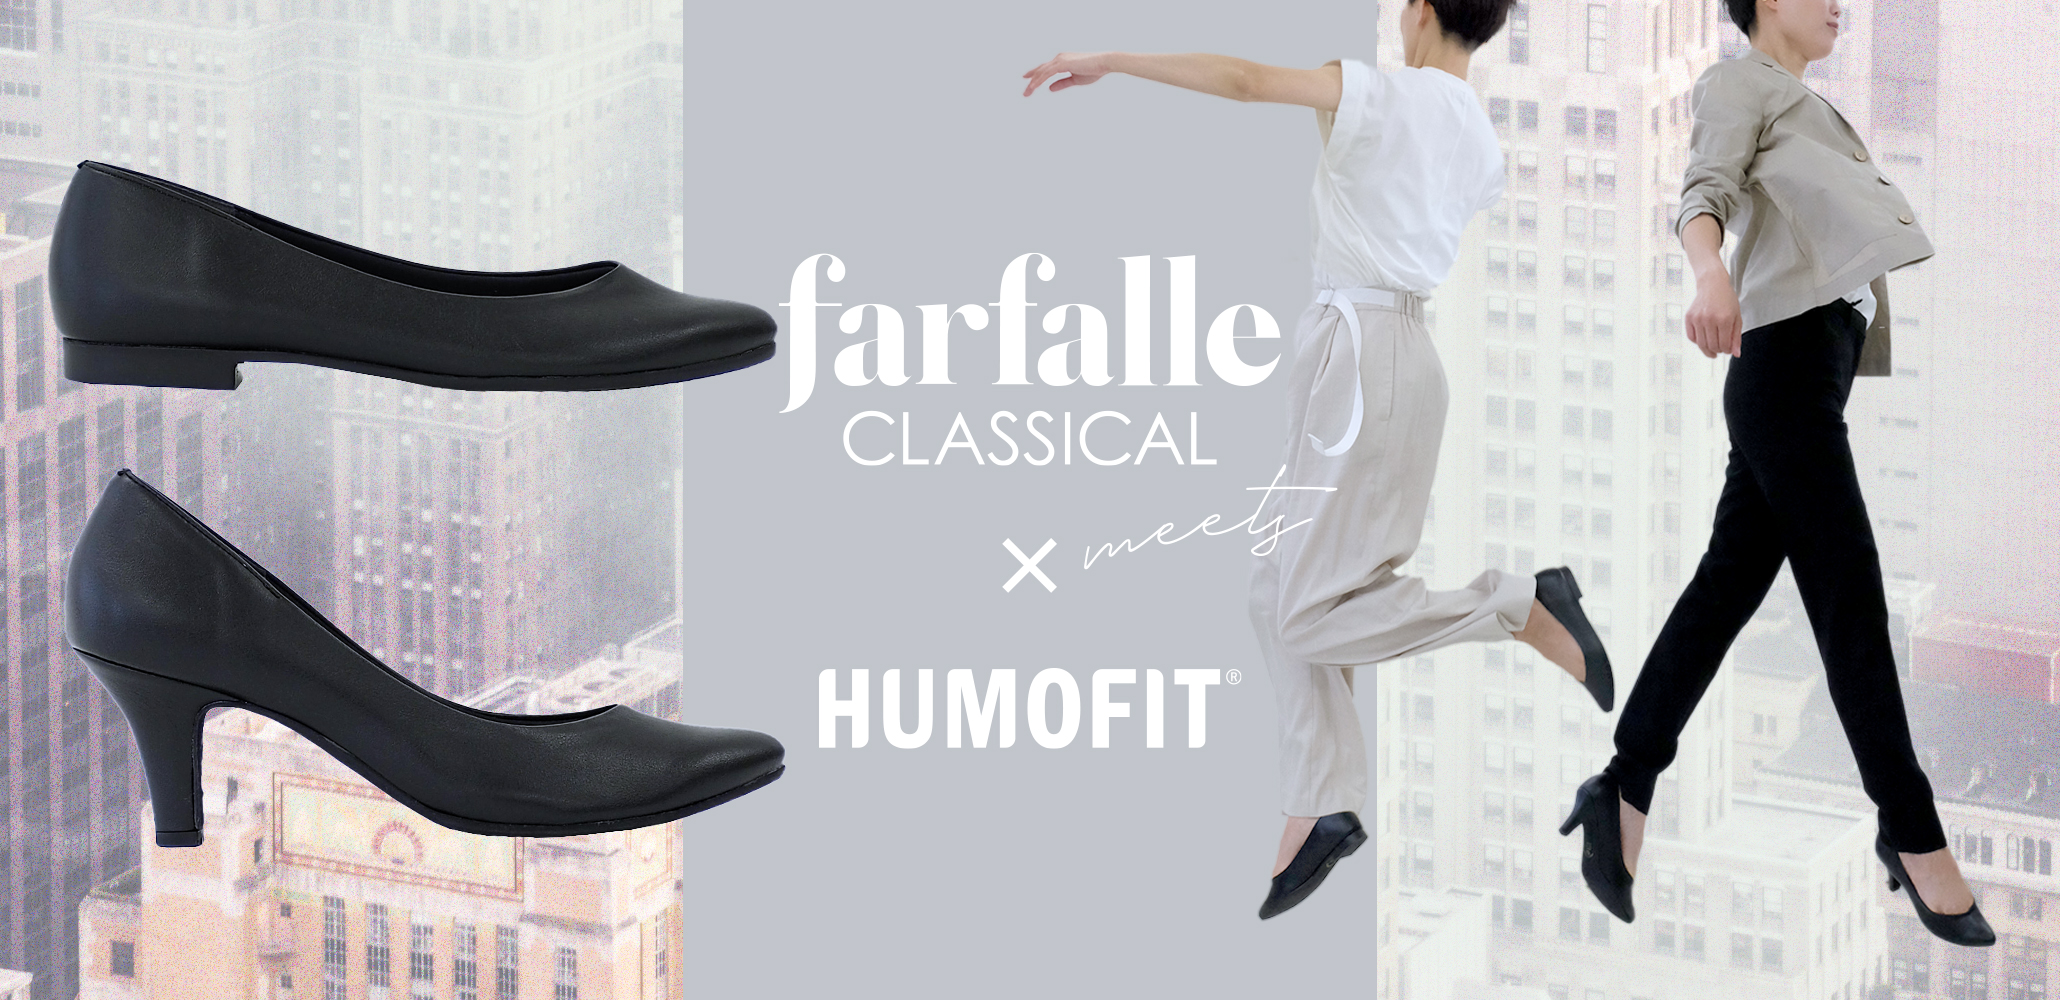 クロシェ 三井化学株式会社の新素材 Humofit R を活用した 記憶する靴 Farfalle Classicalから 自分で足型を作れるパンプスを発売 Newscast